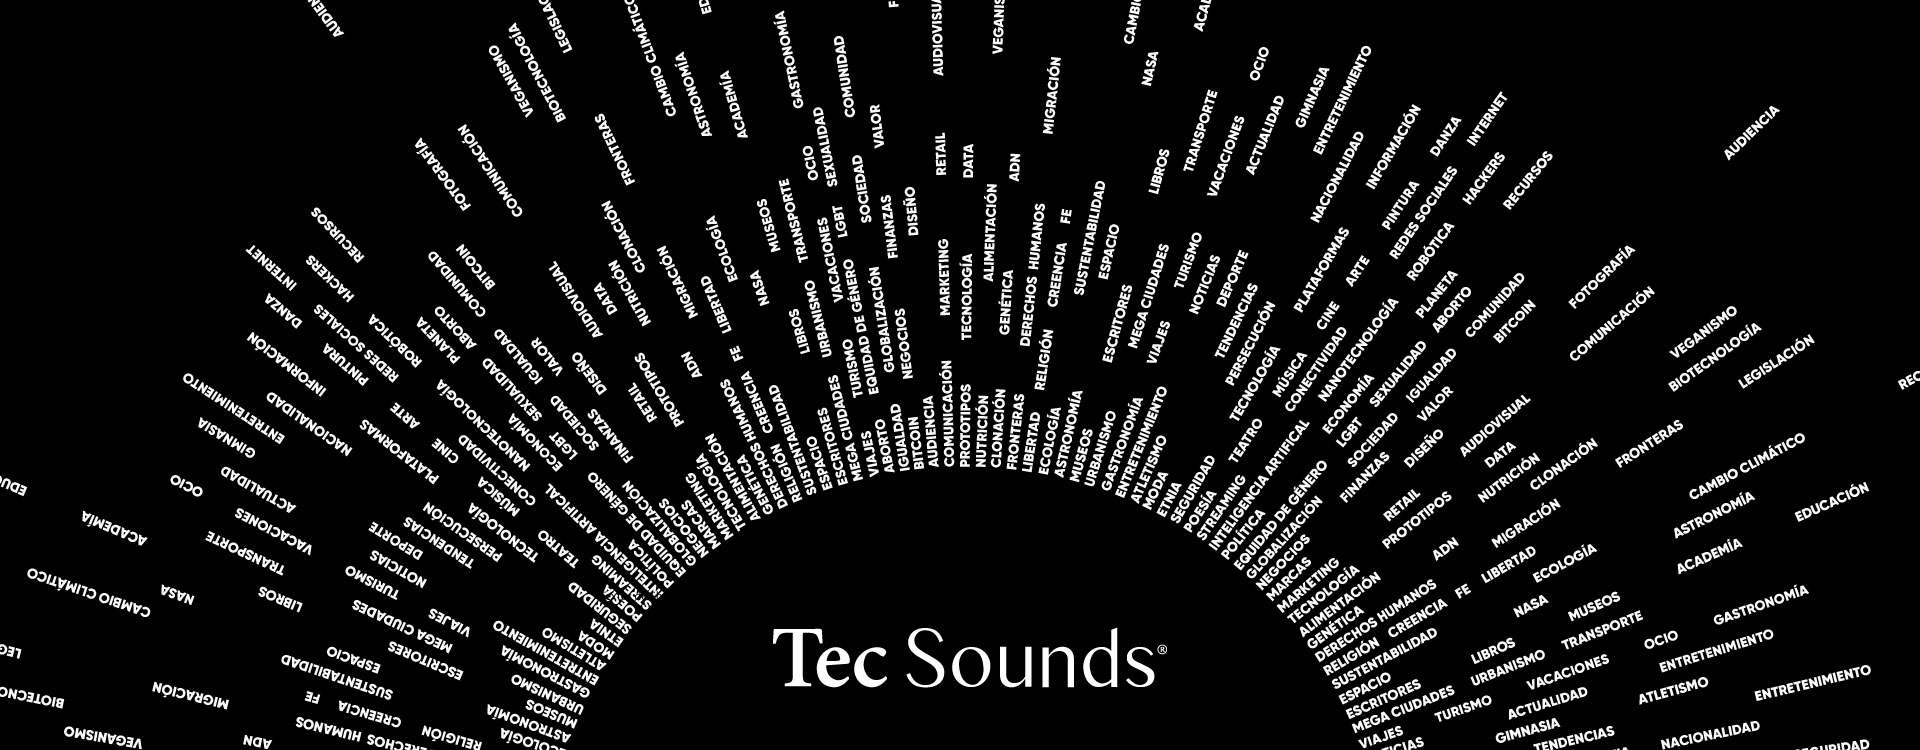 Tec Sounds cuenta con podcasts para diferentes públicos.